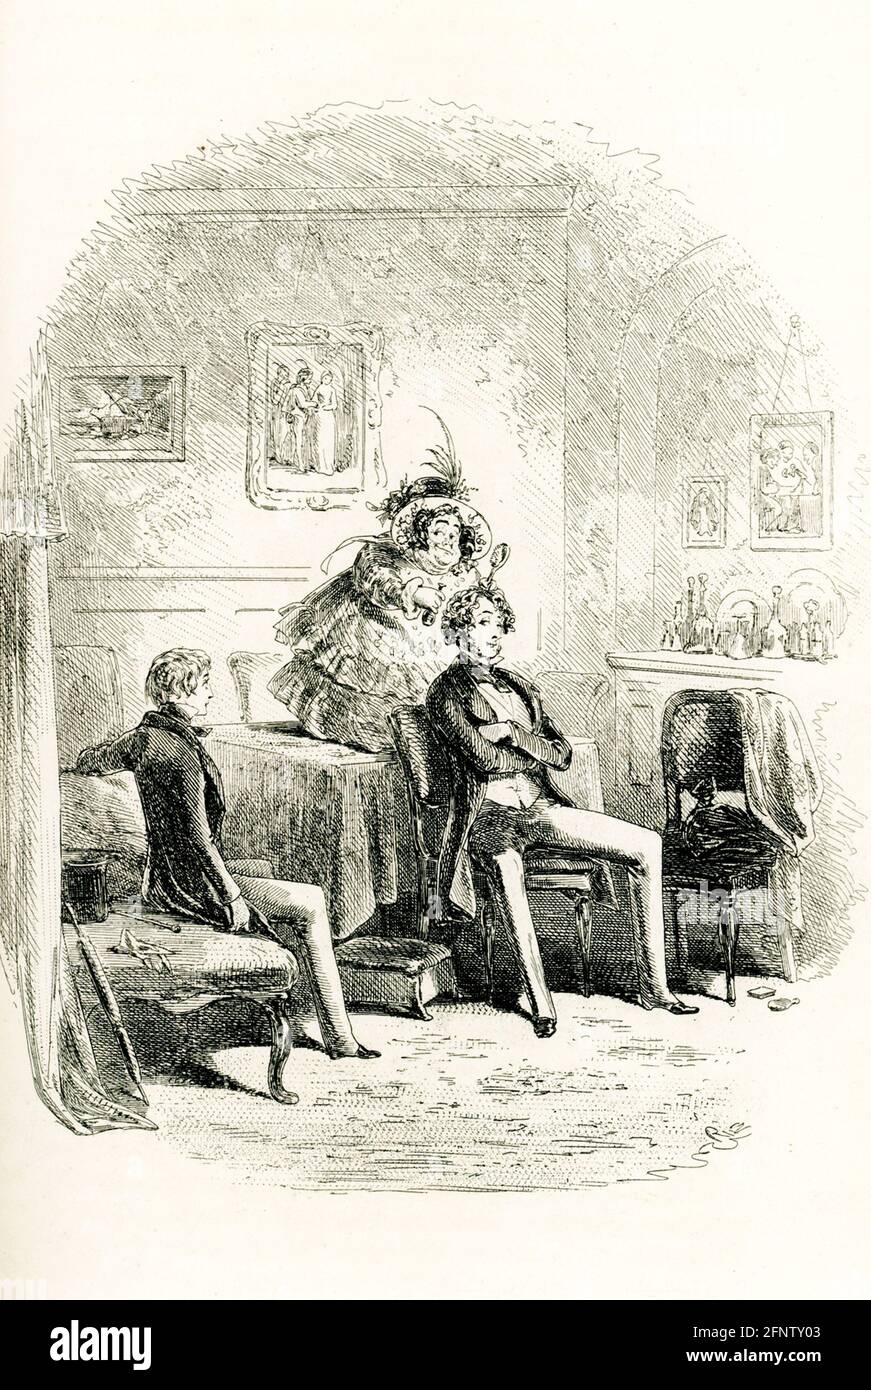 Il romanziere inglese Charles Dickens (1837–1870) pubblicò il suo romanzo David Copperfield descrivendo in dettaglio le sue avventure nel suo viaggio dall'infanzia alla maturità. Fu pubblicato per la prima volta come serie nel 1849–50, e come libro nel 1850. L'illustratore era Hablot Browne. Lo pseudonimo di Browne era 'Phiz'; Dickens' era 'Boz'. Si noti il nome "Phiz" sotto questa illustrazione di Browne che ha la didascalia "i make the familiance of Miss Mowcher". Foto Stock